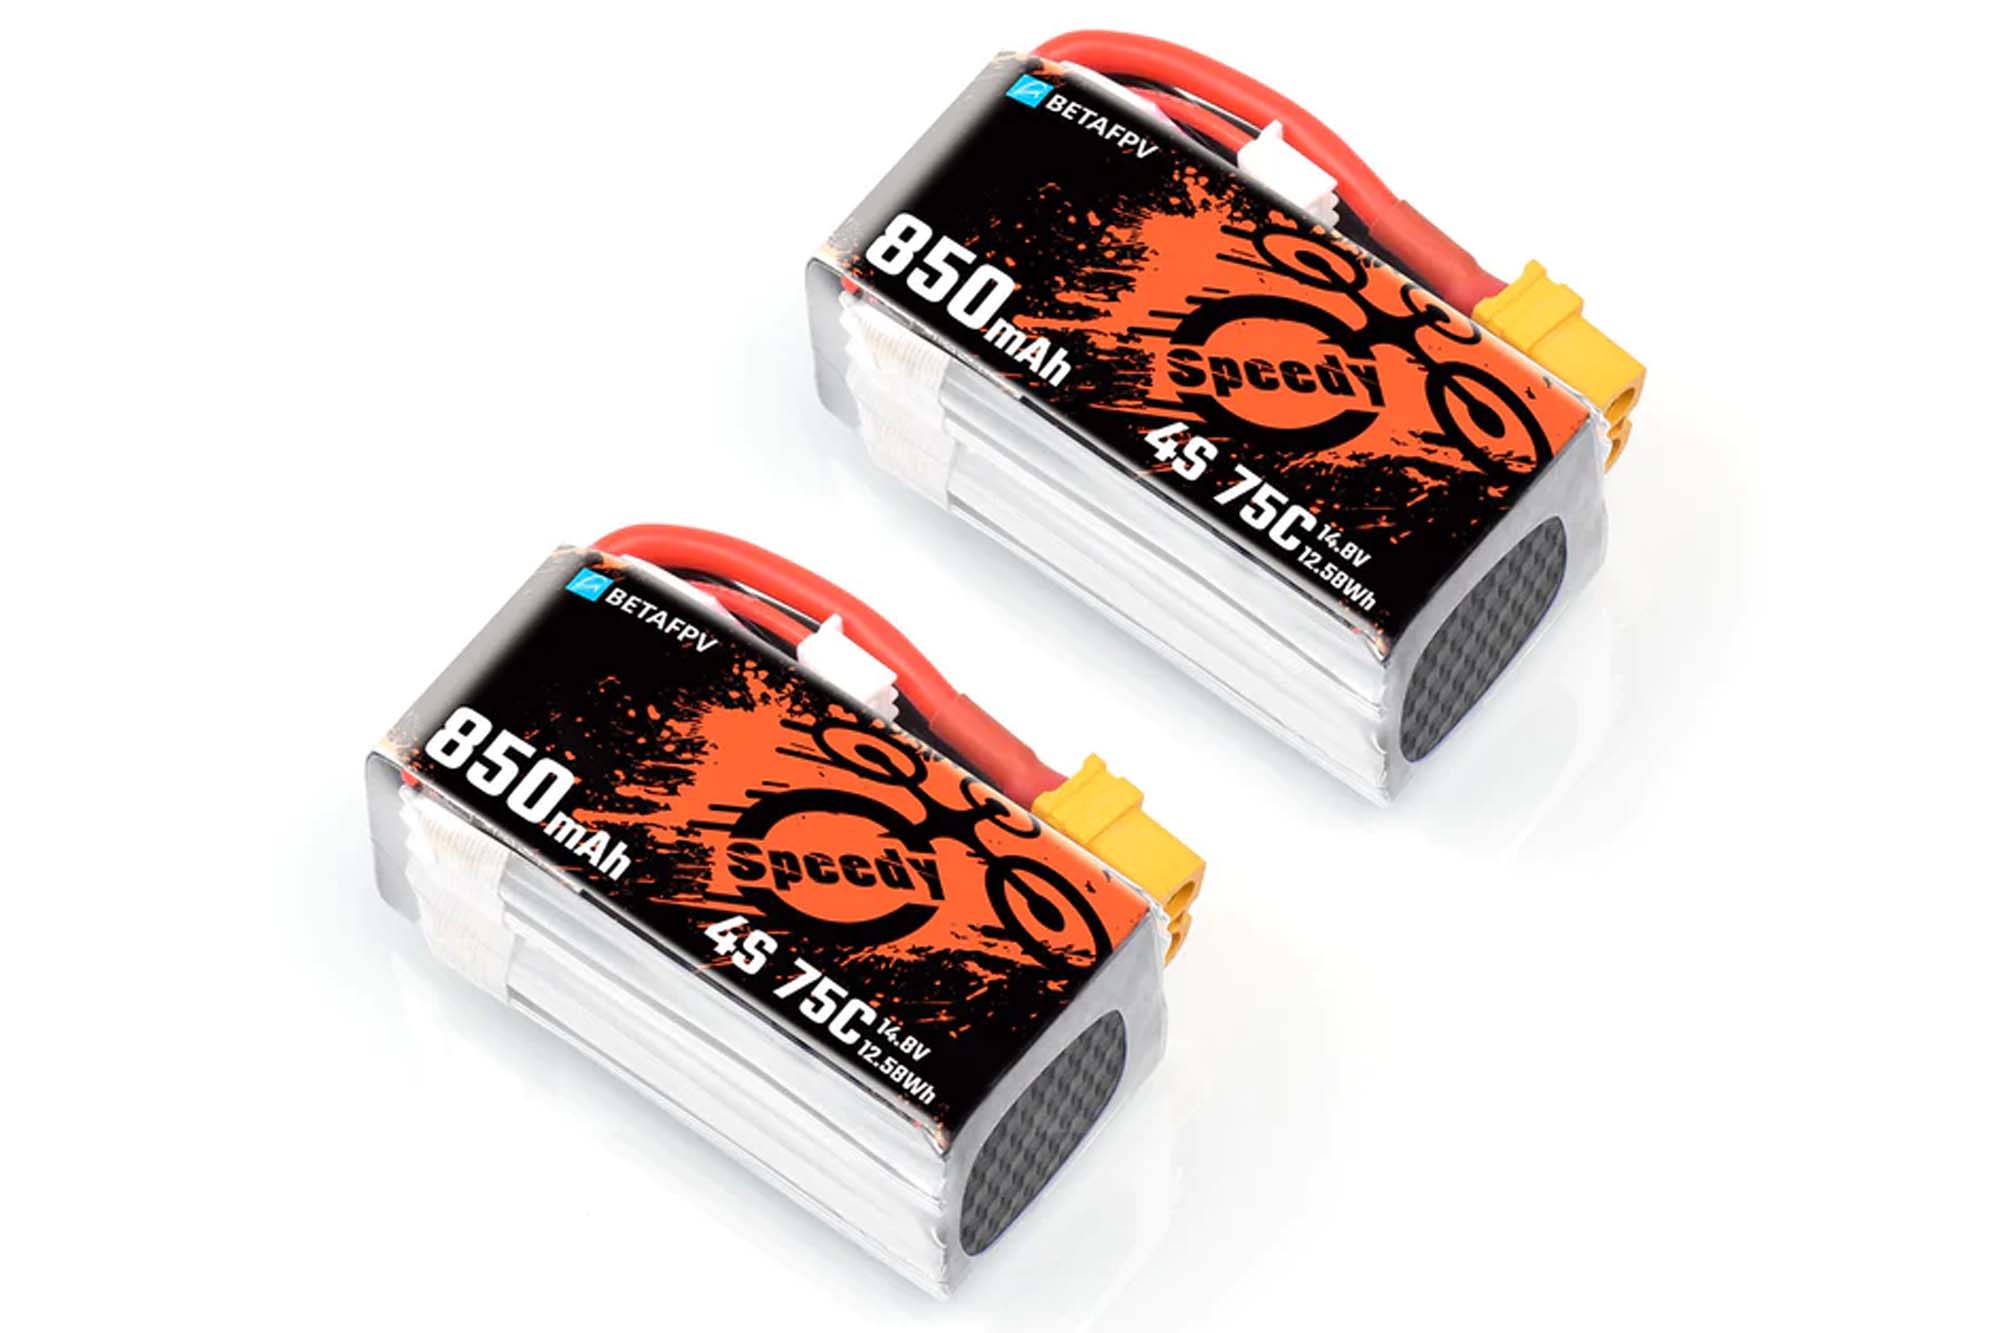 BetaFPV 850mAh 3S/4S 75C Lipo Battery (2PCS)